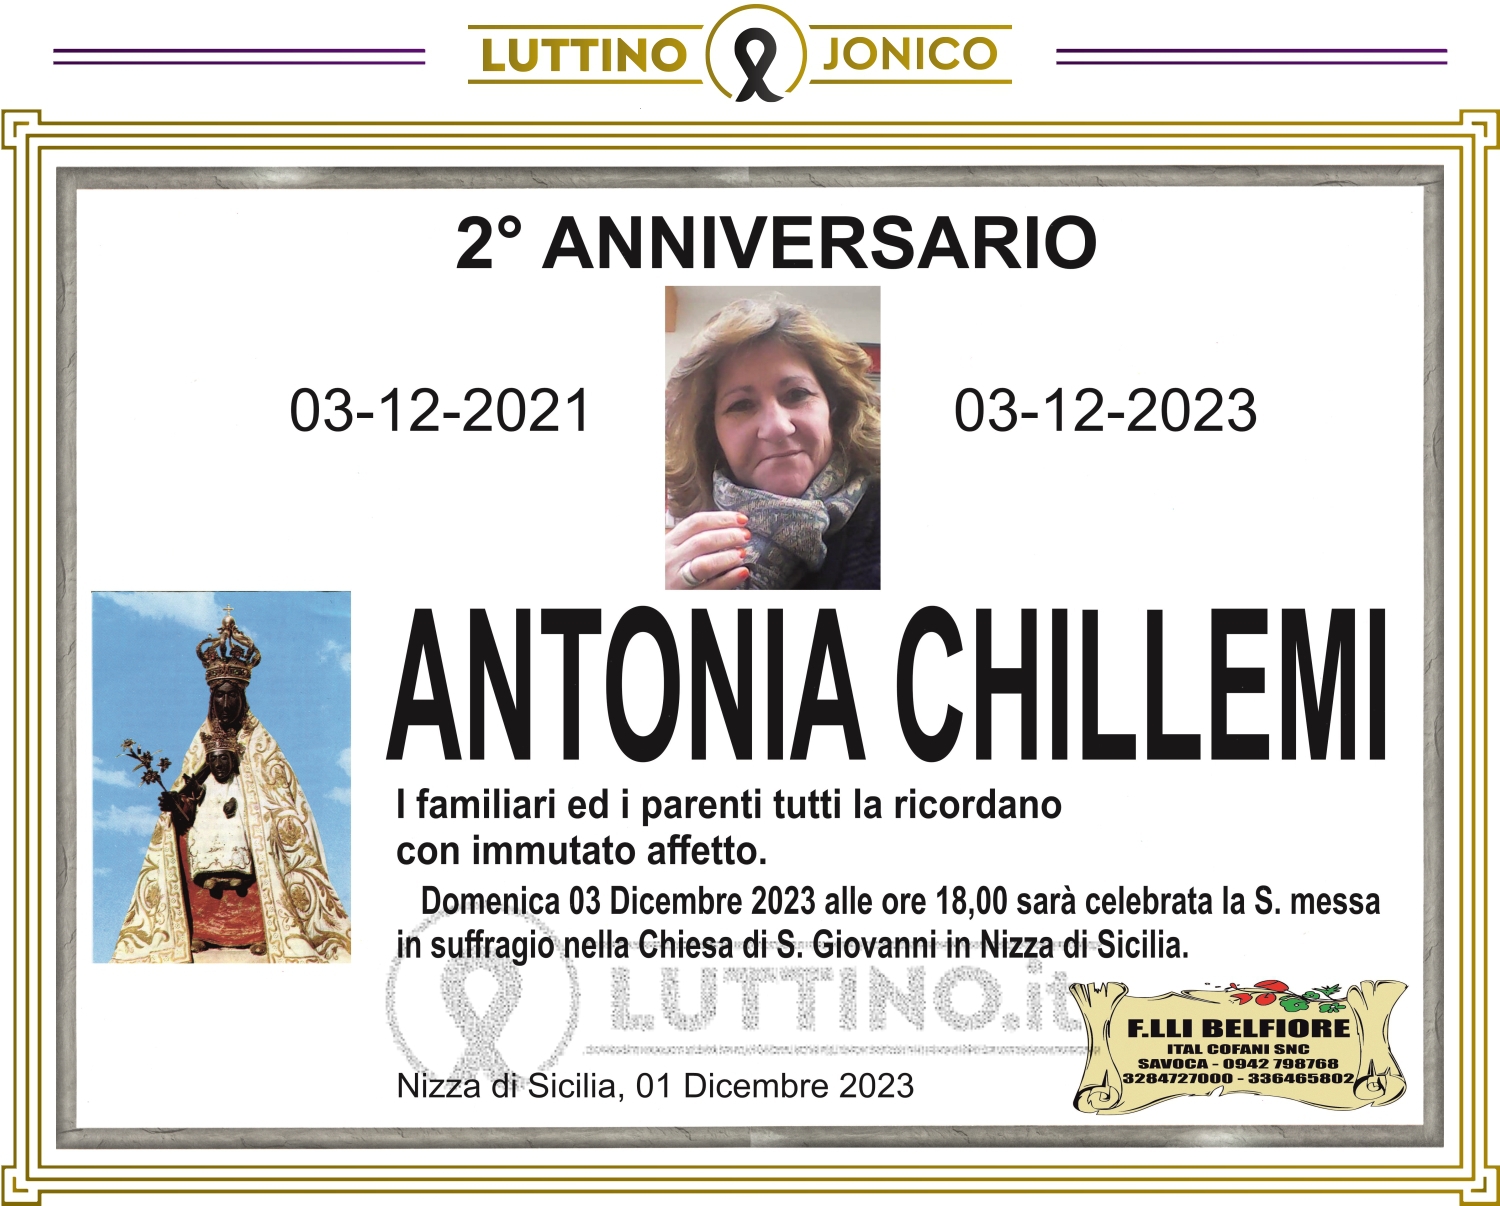 Antonia Chillemi